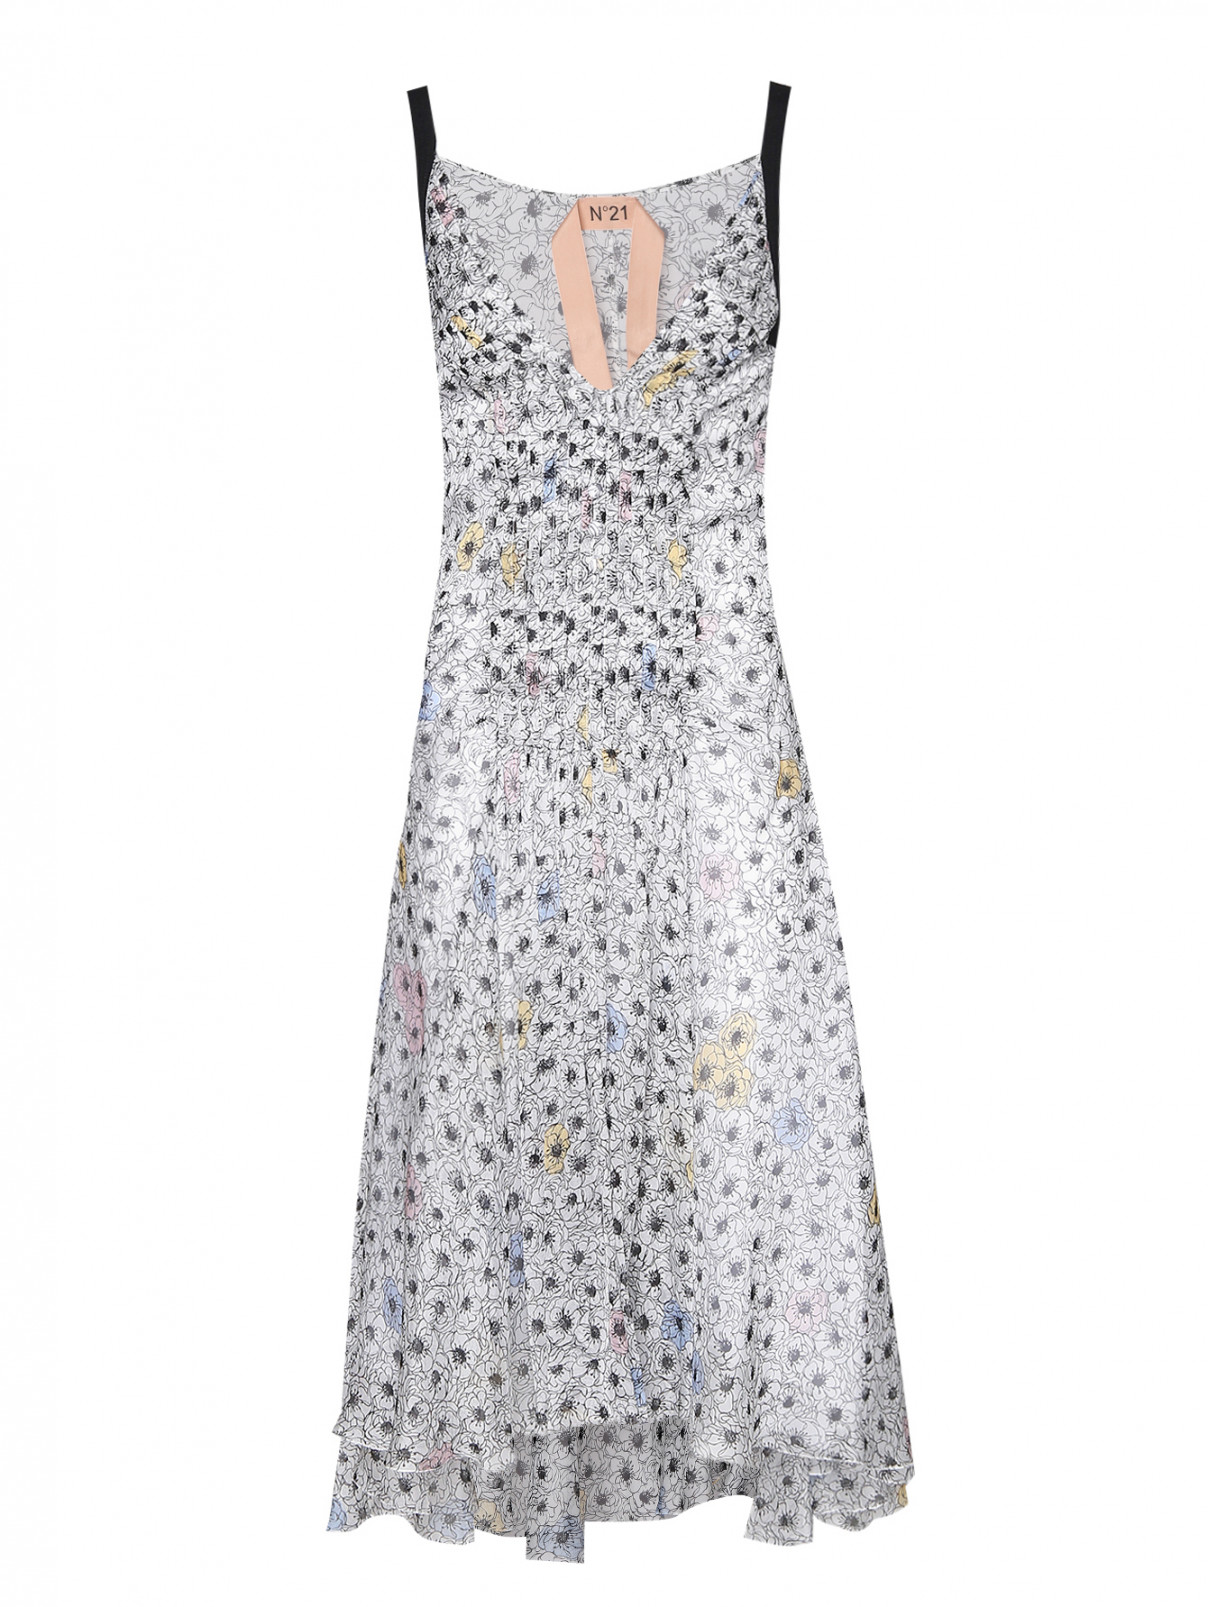 Платье из шелка с узором N21  –  Общий вид  – Цвет:  Белый